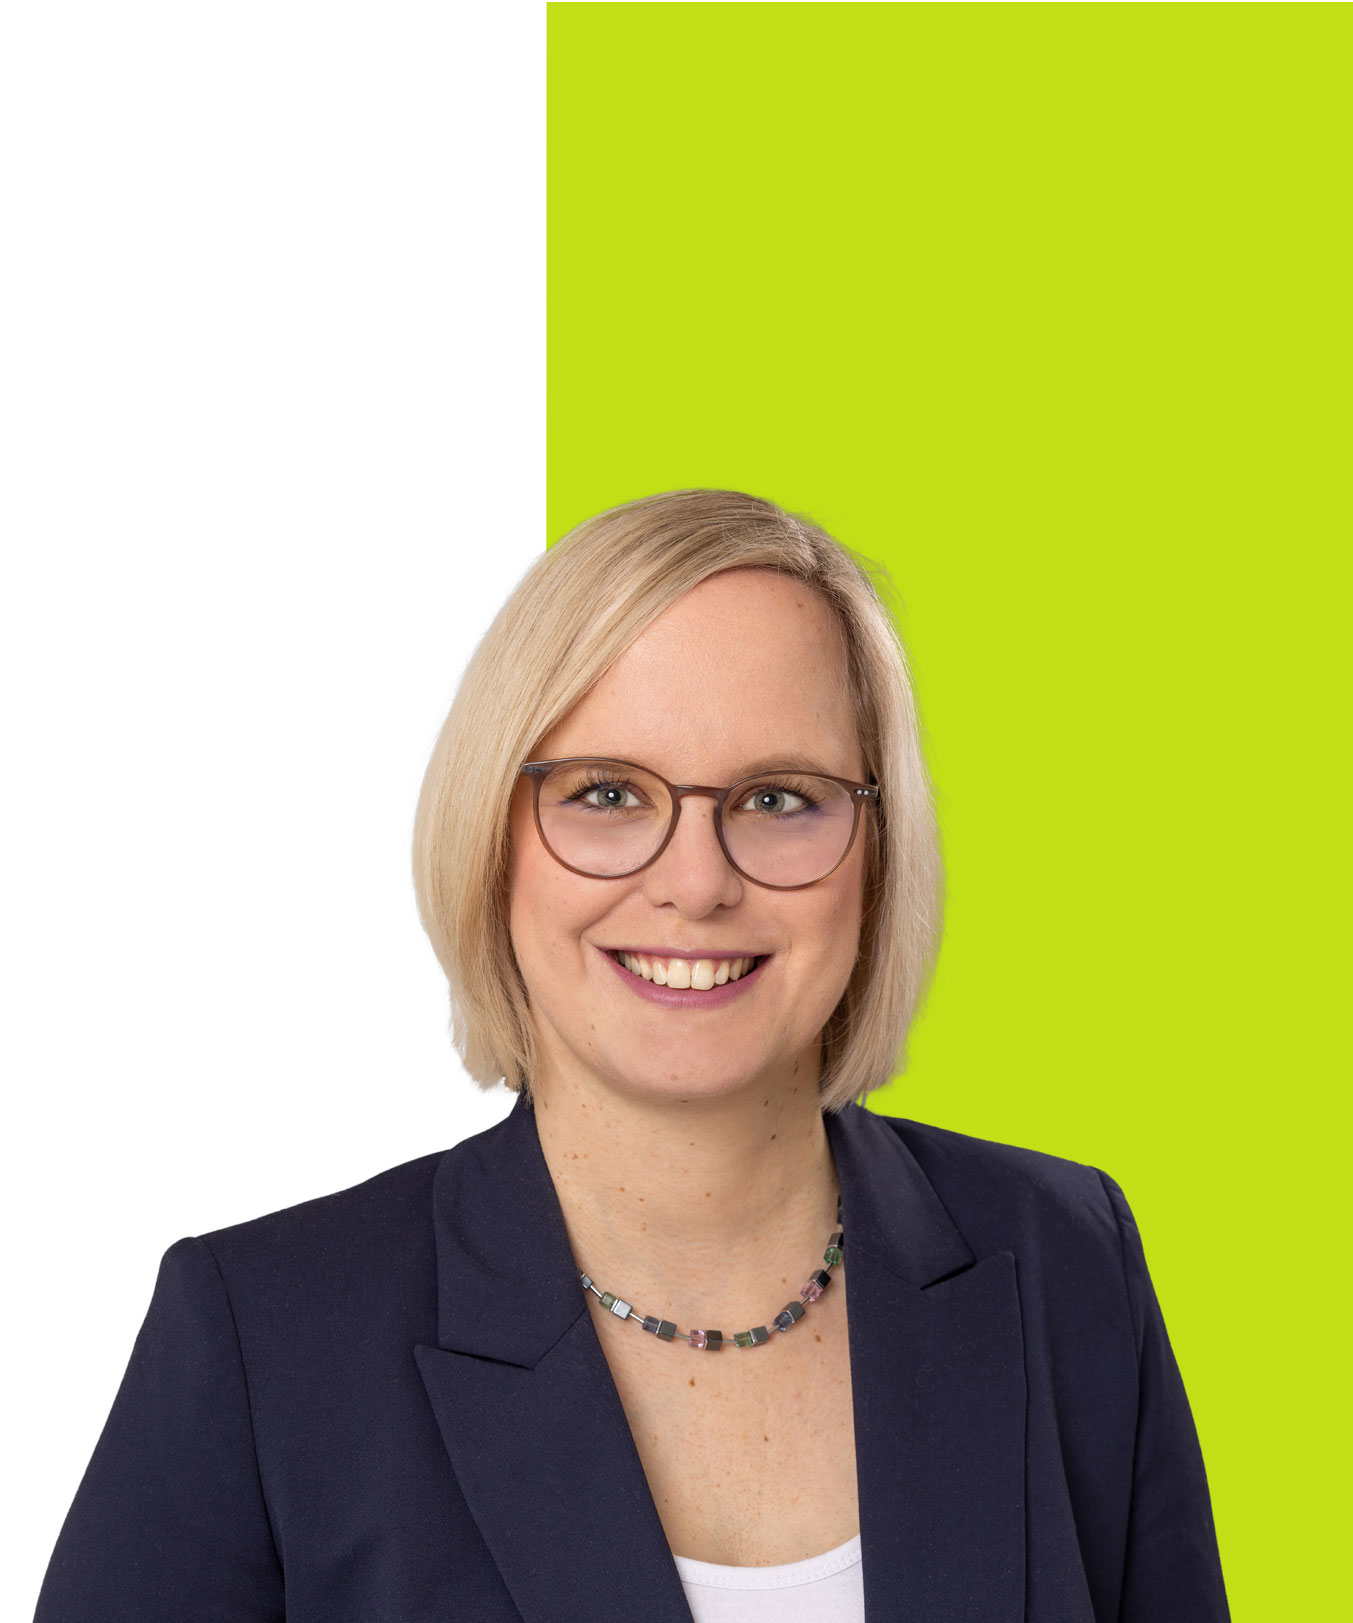 Anwalt Sarah-Kristin Krag